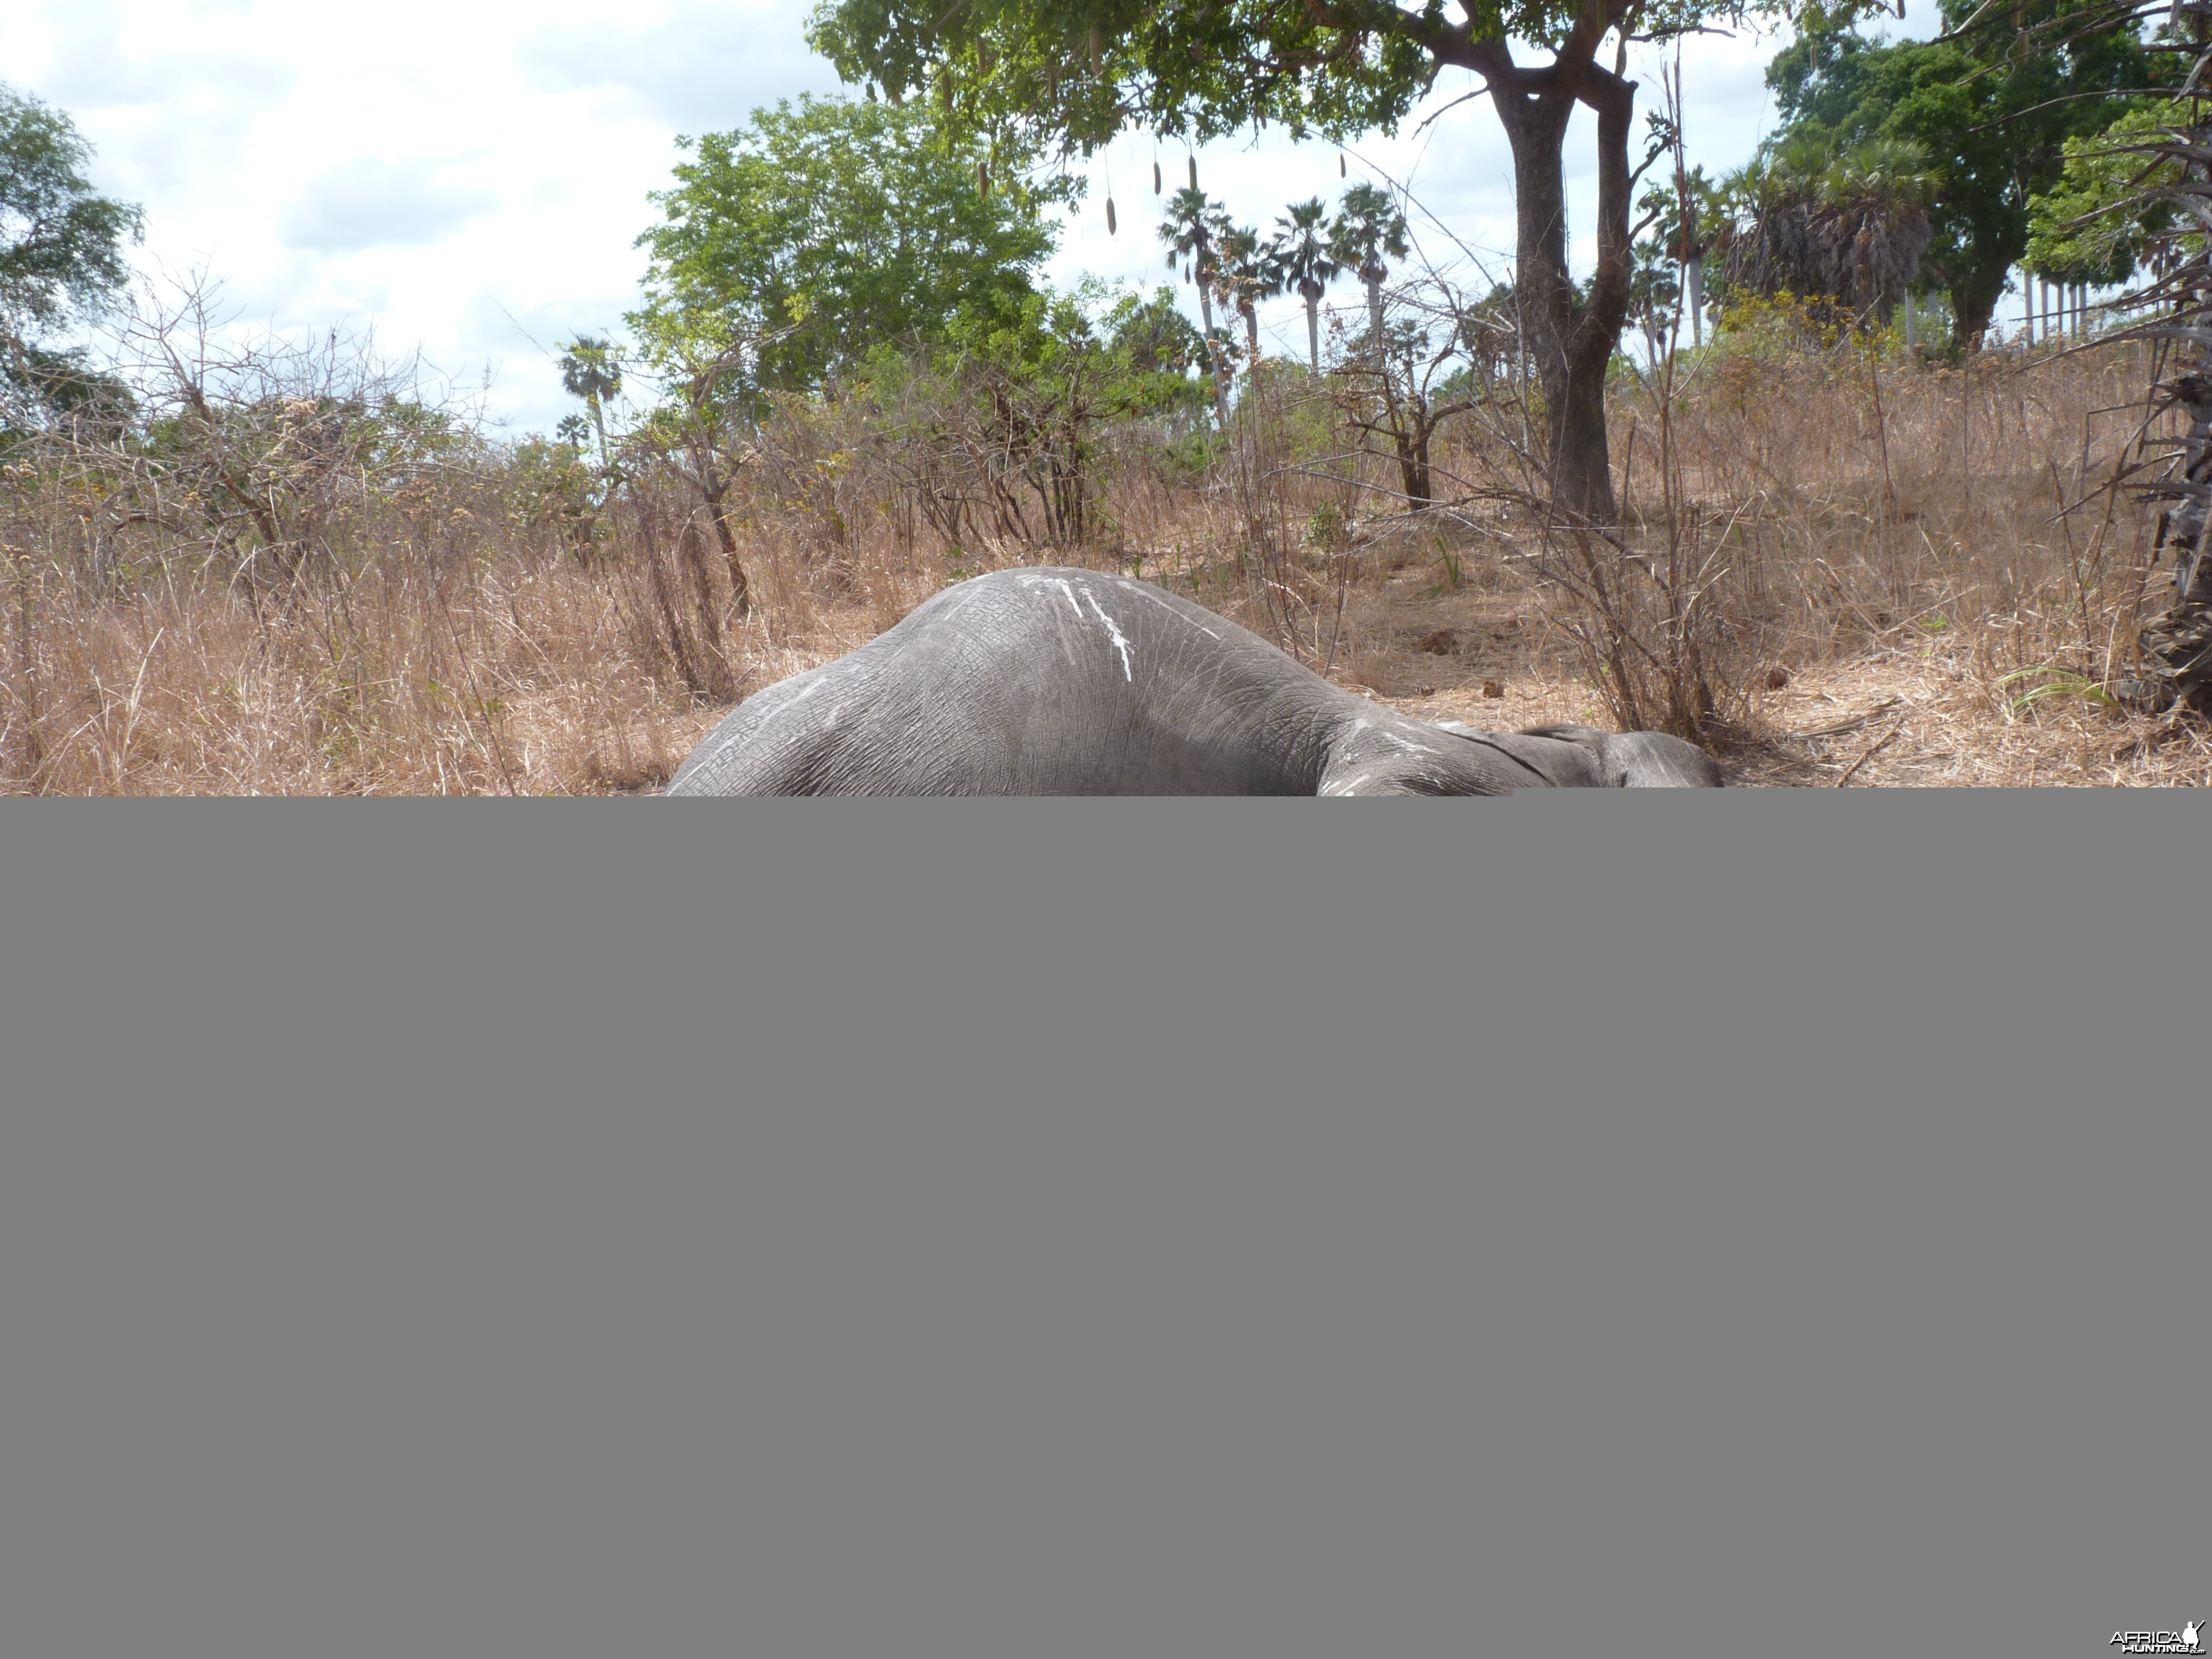 Elephant poaching in Tanzania